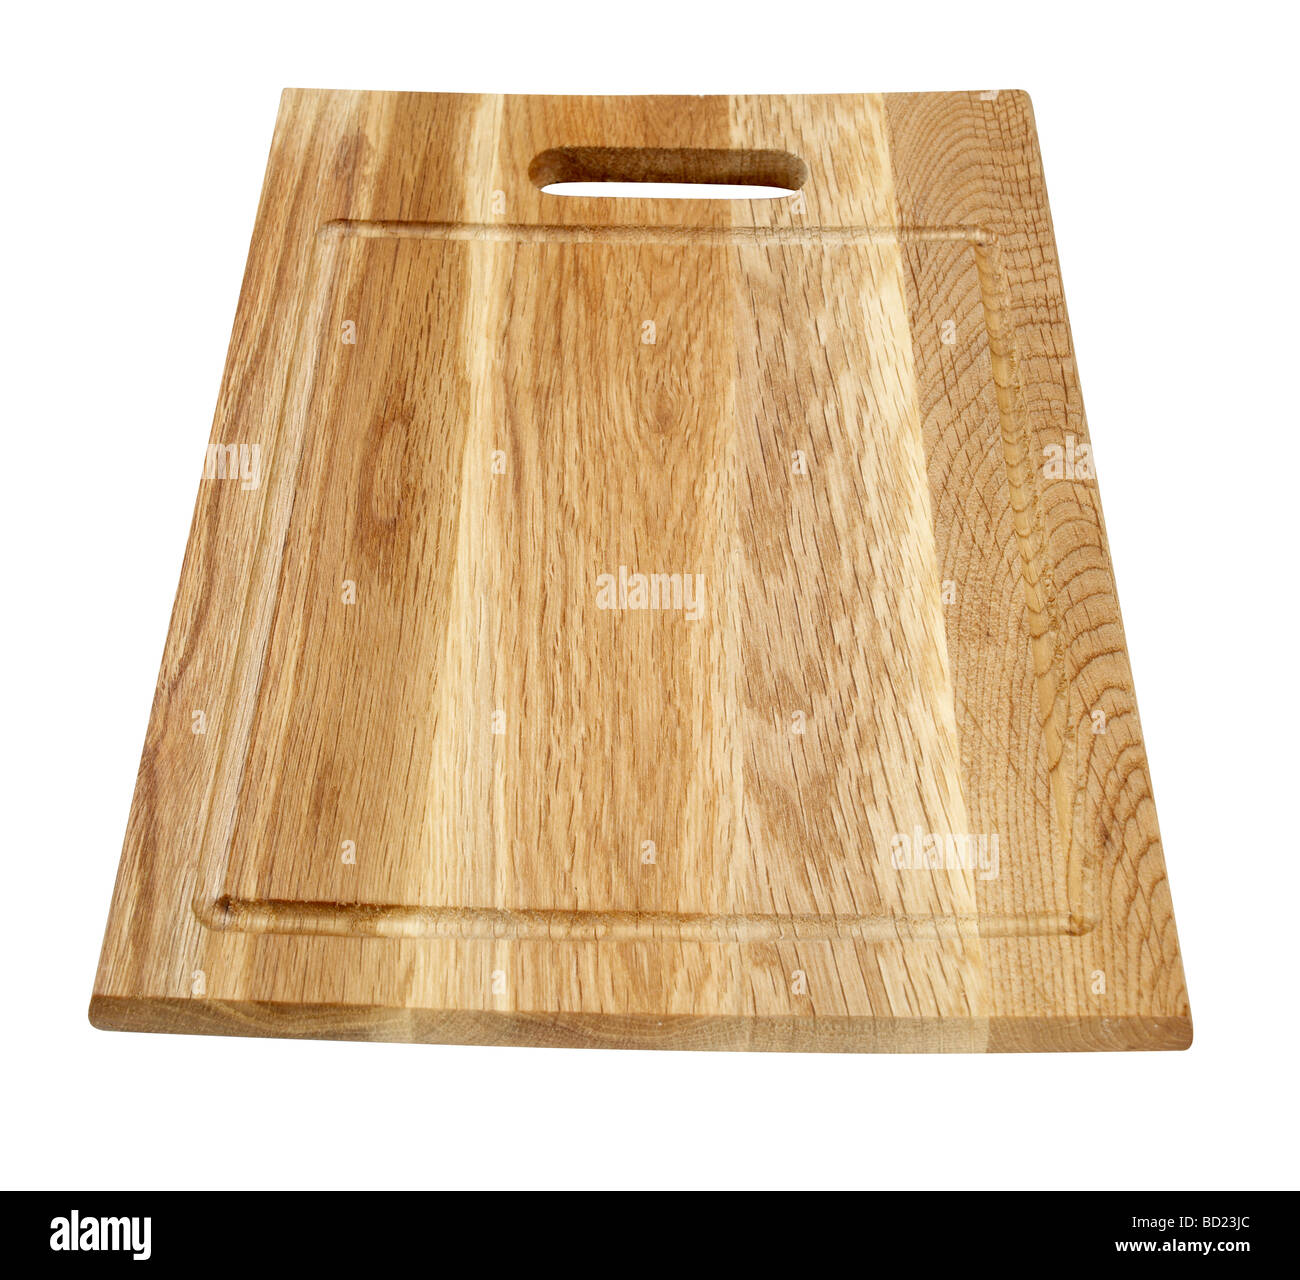 wood cutting board Stock Photo